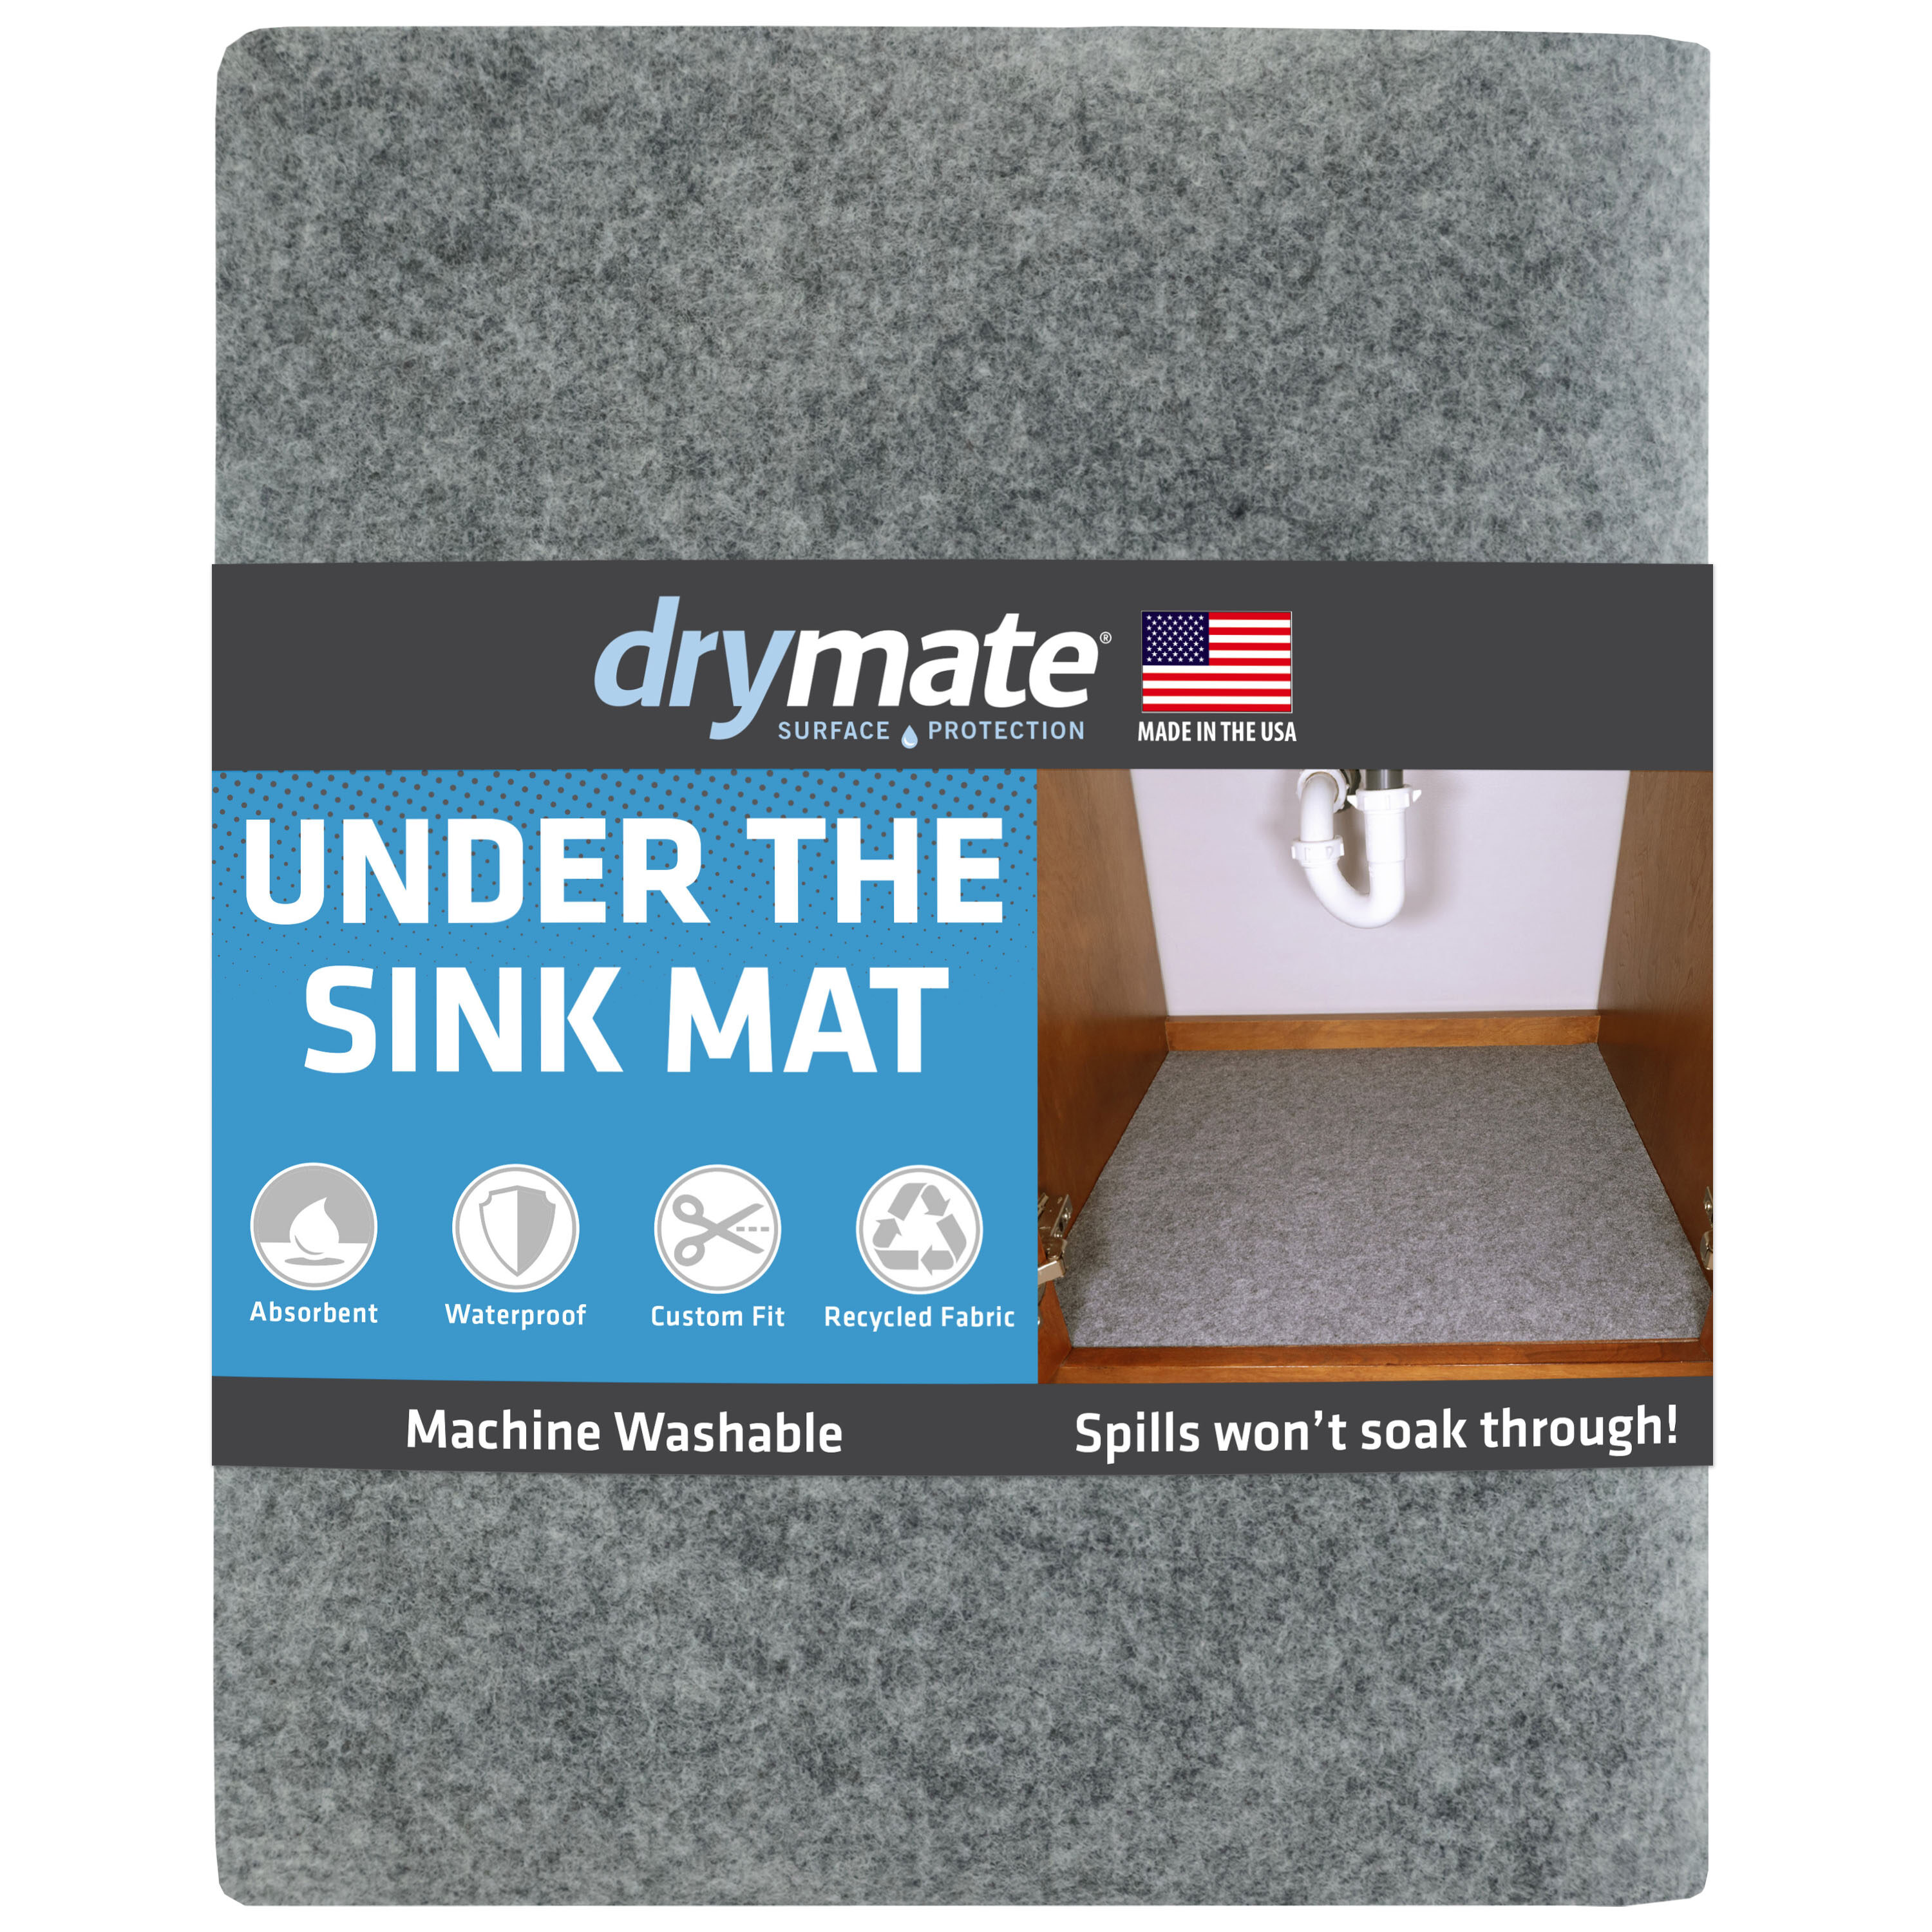 Xtreme Mats Under Sink Kitchen Cabinet Mat 37 x 22 inch Beige